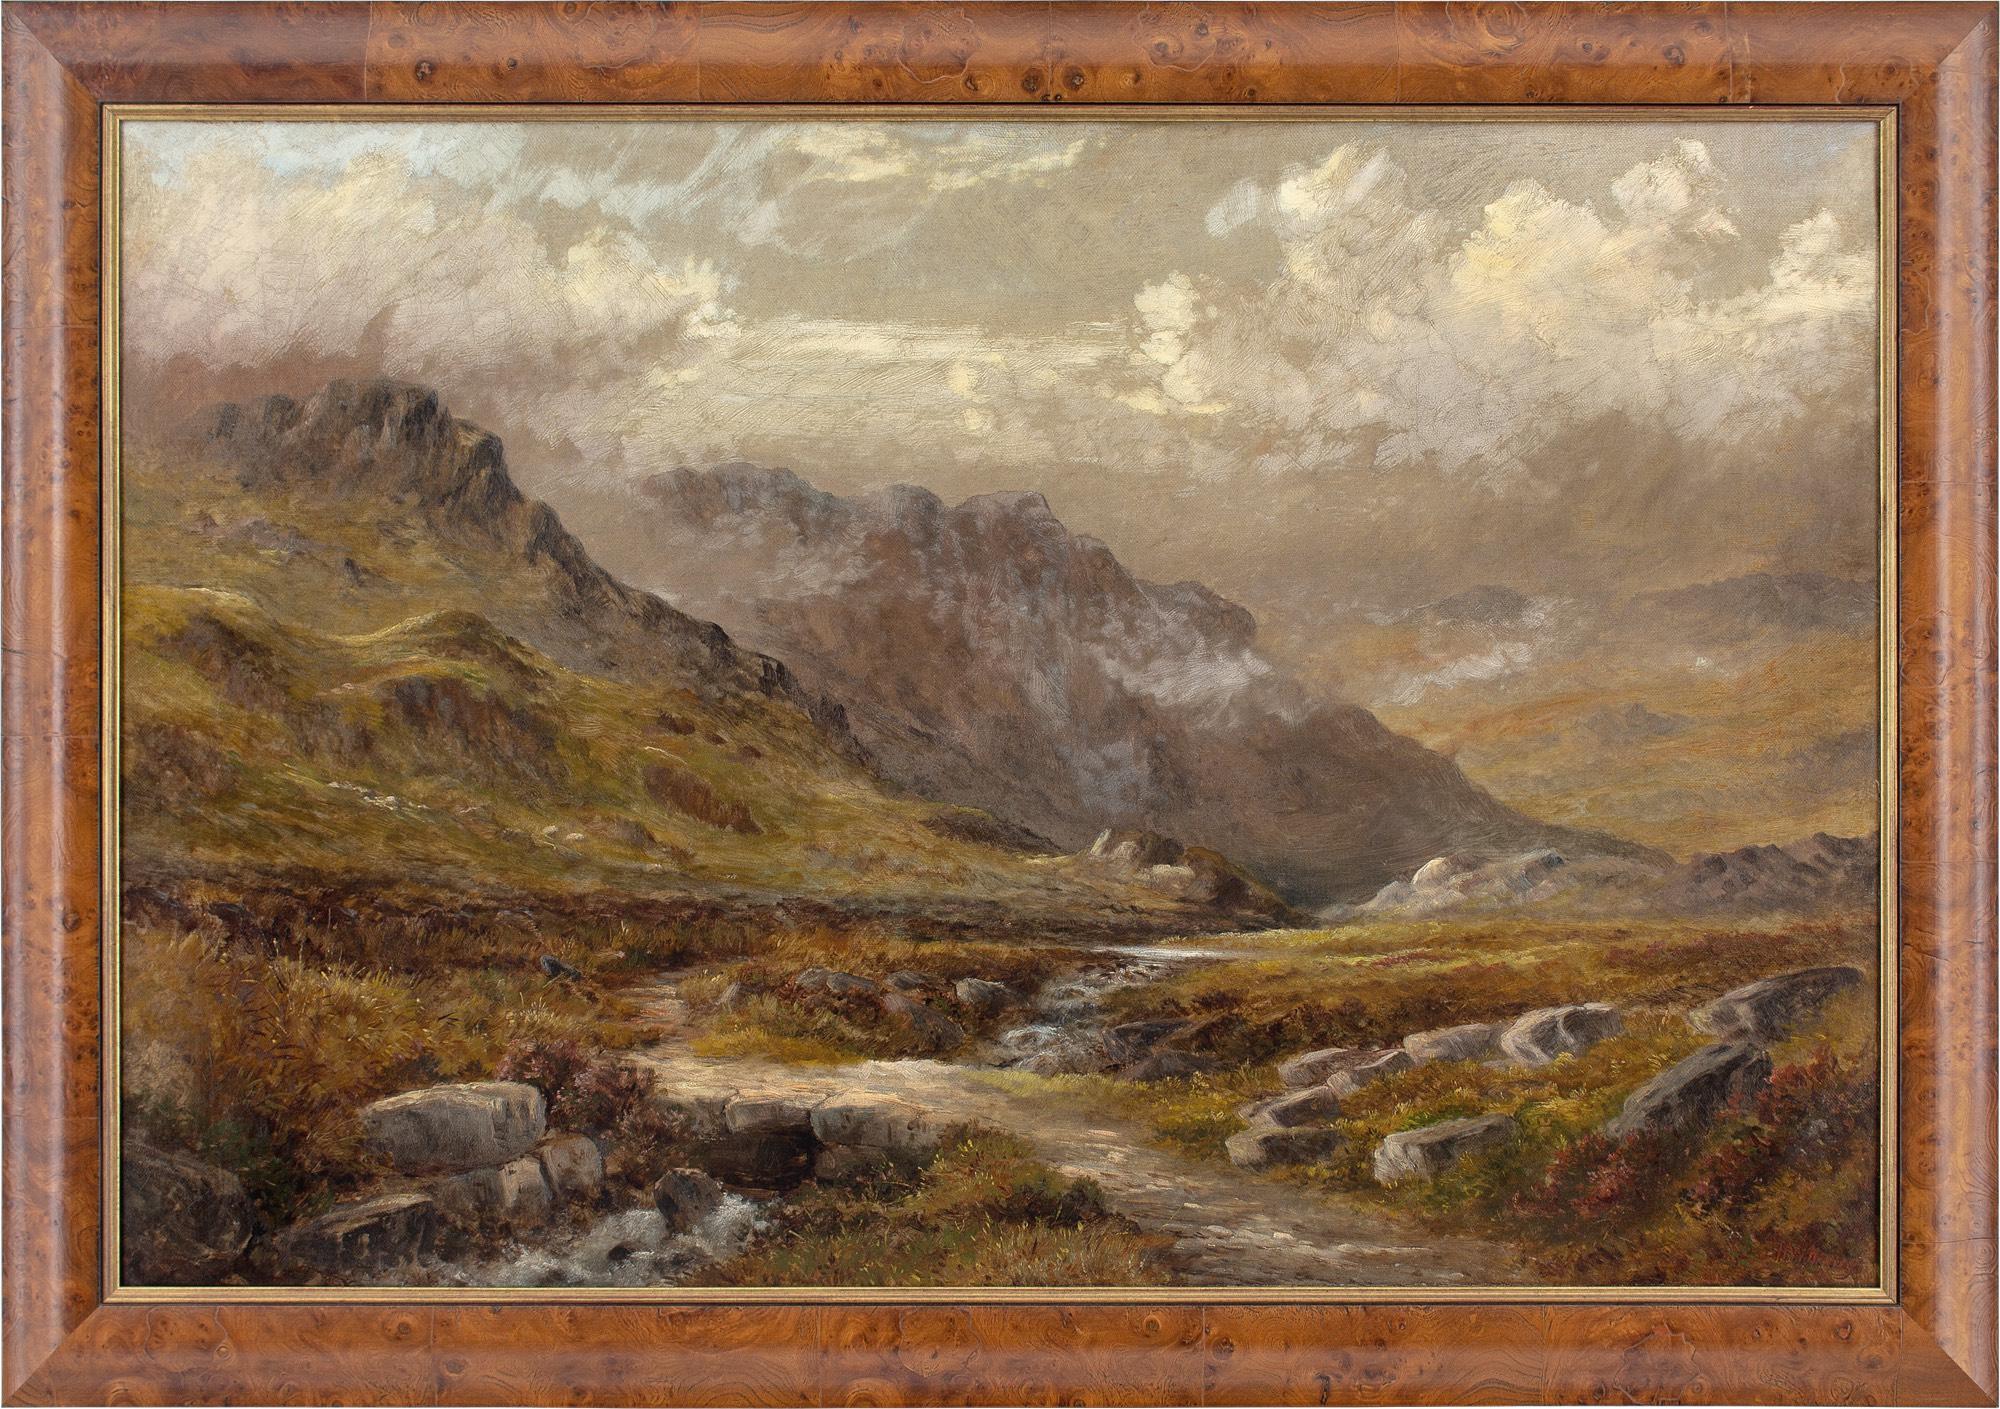 Cette peinture à l'huile de la fin du XIXe siècle de l'artiste britannique Henry W HenRY (fl. 1871-1895) représente un paysage de montagne avec un ruisseau sinueux.

Henry W. HENRY était un peintre paysagiste réputé, principalement connu pour ses